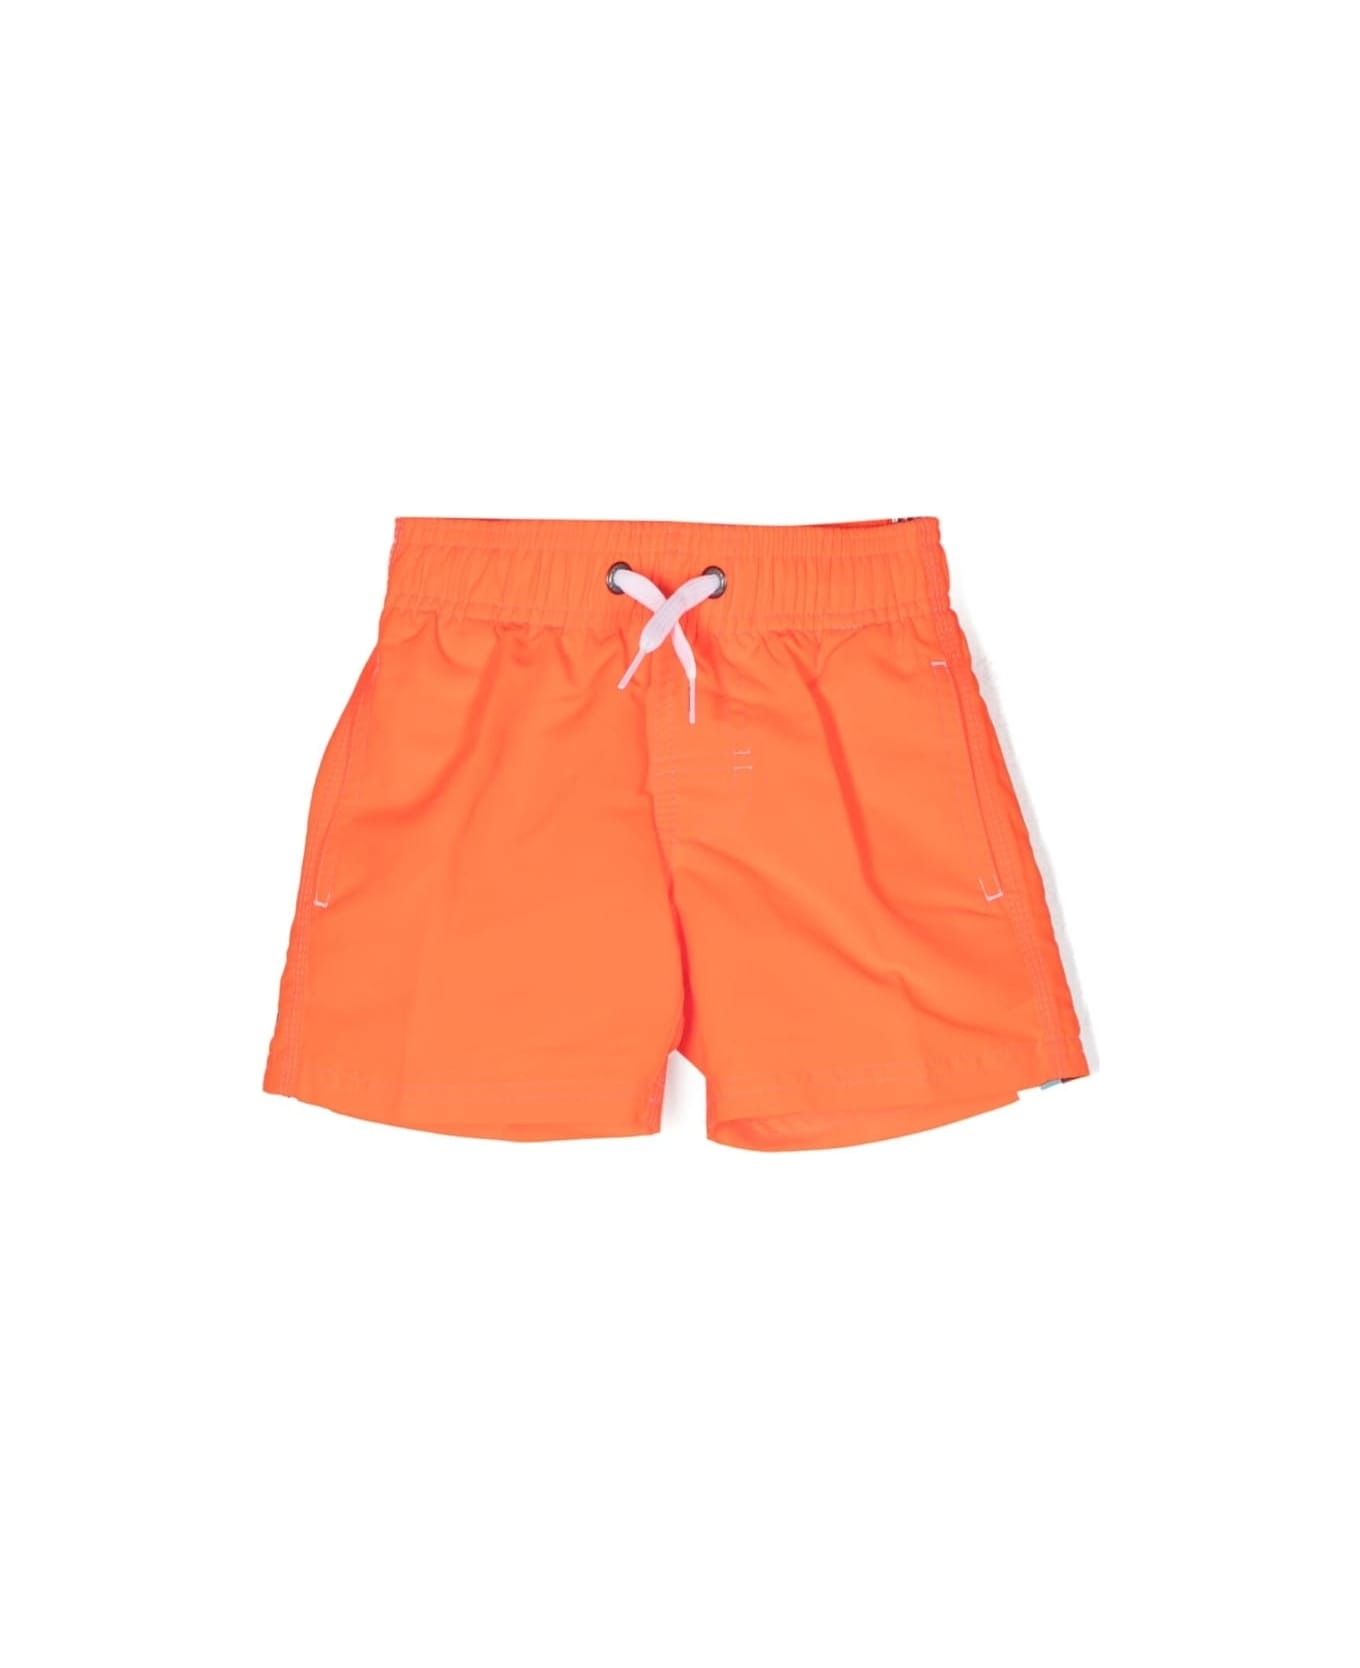 Bonton Swimsuit With Print - Orange 水着